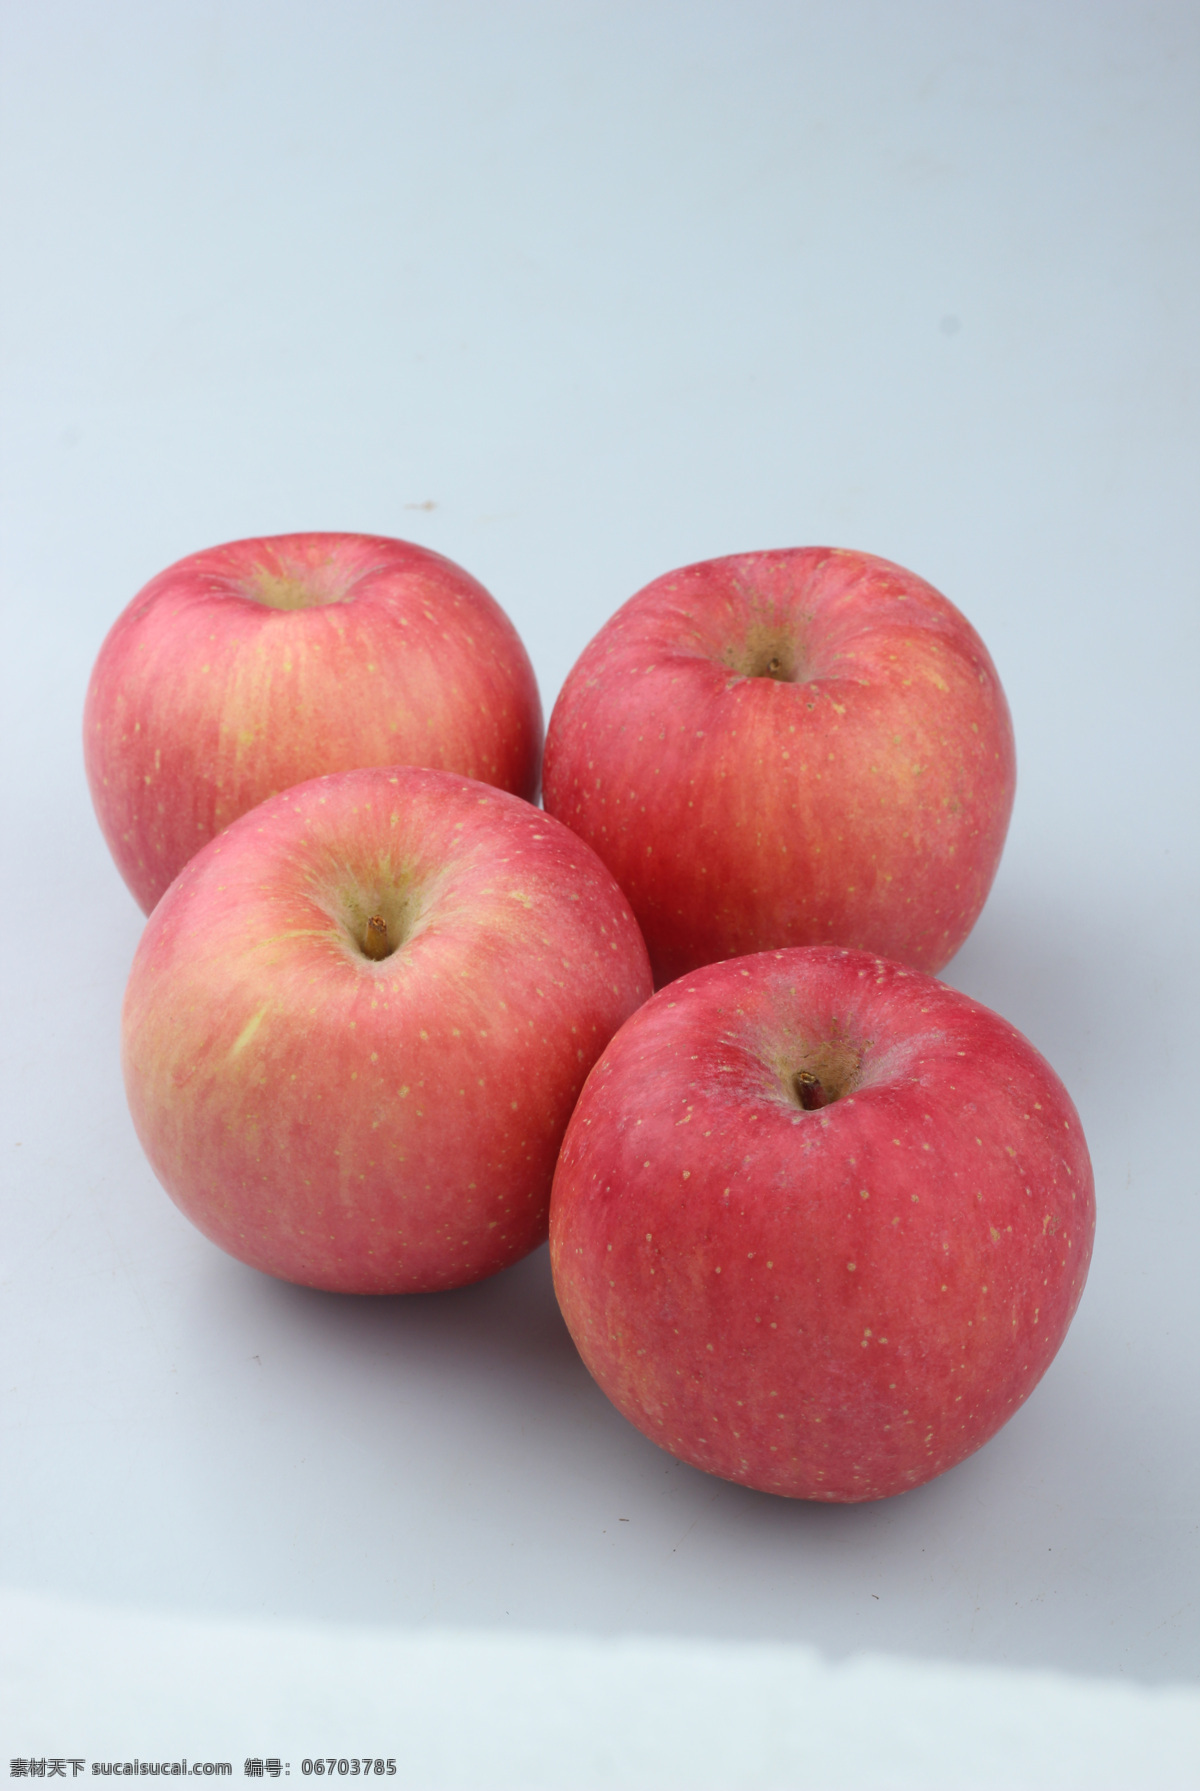 苹果 水果 红苹果 圣诞苹果 超市苹果 红富士 陕西苹果 90苹果 生物世界